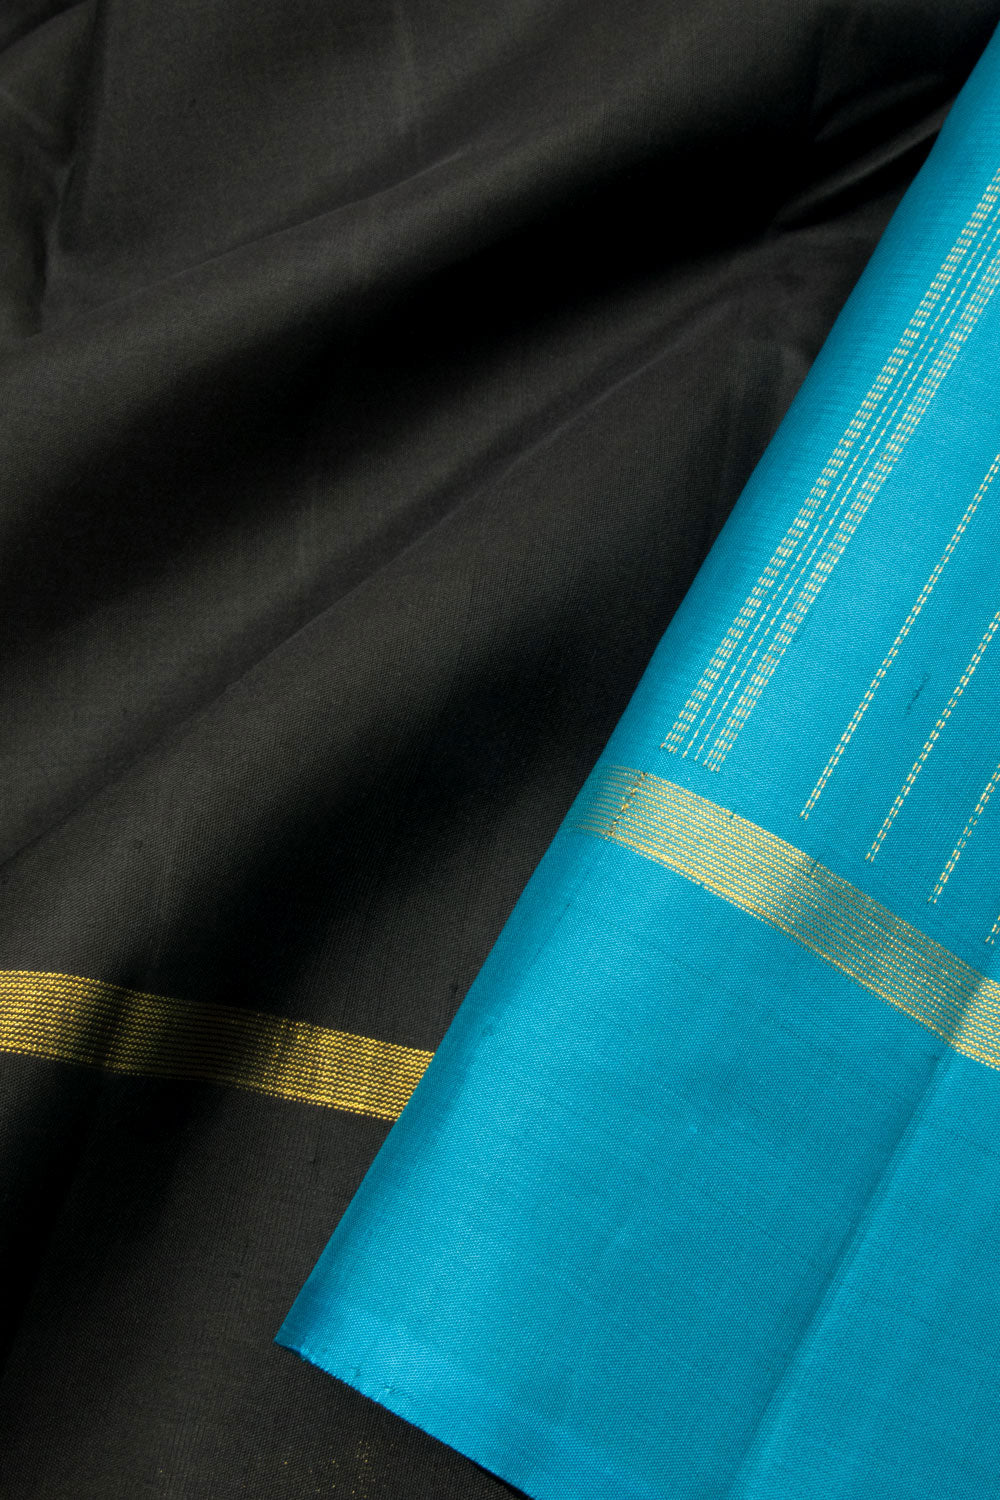 Black Handloom Kanjivaram Silk Saree - Avishya